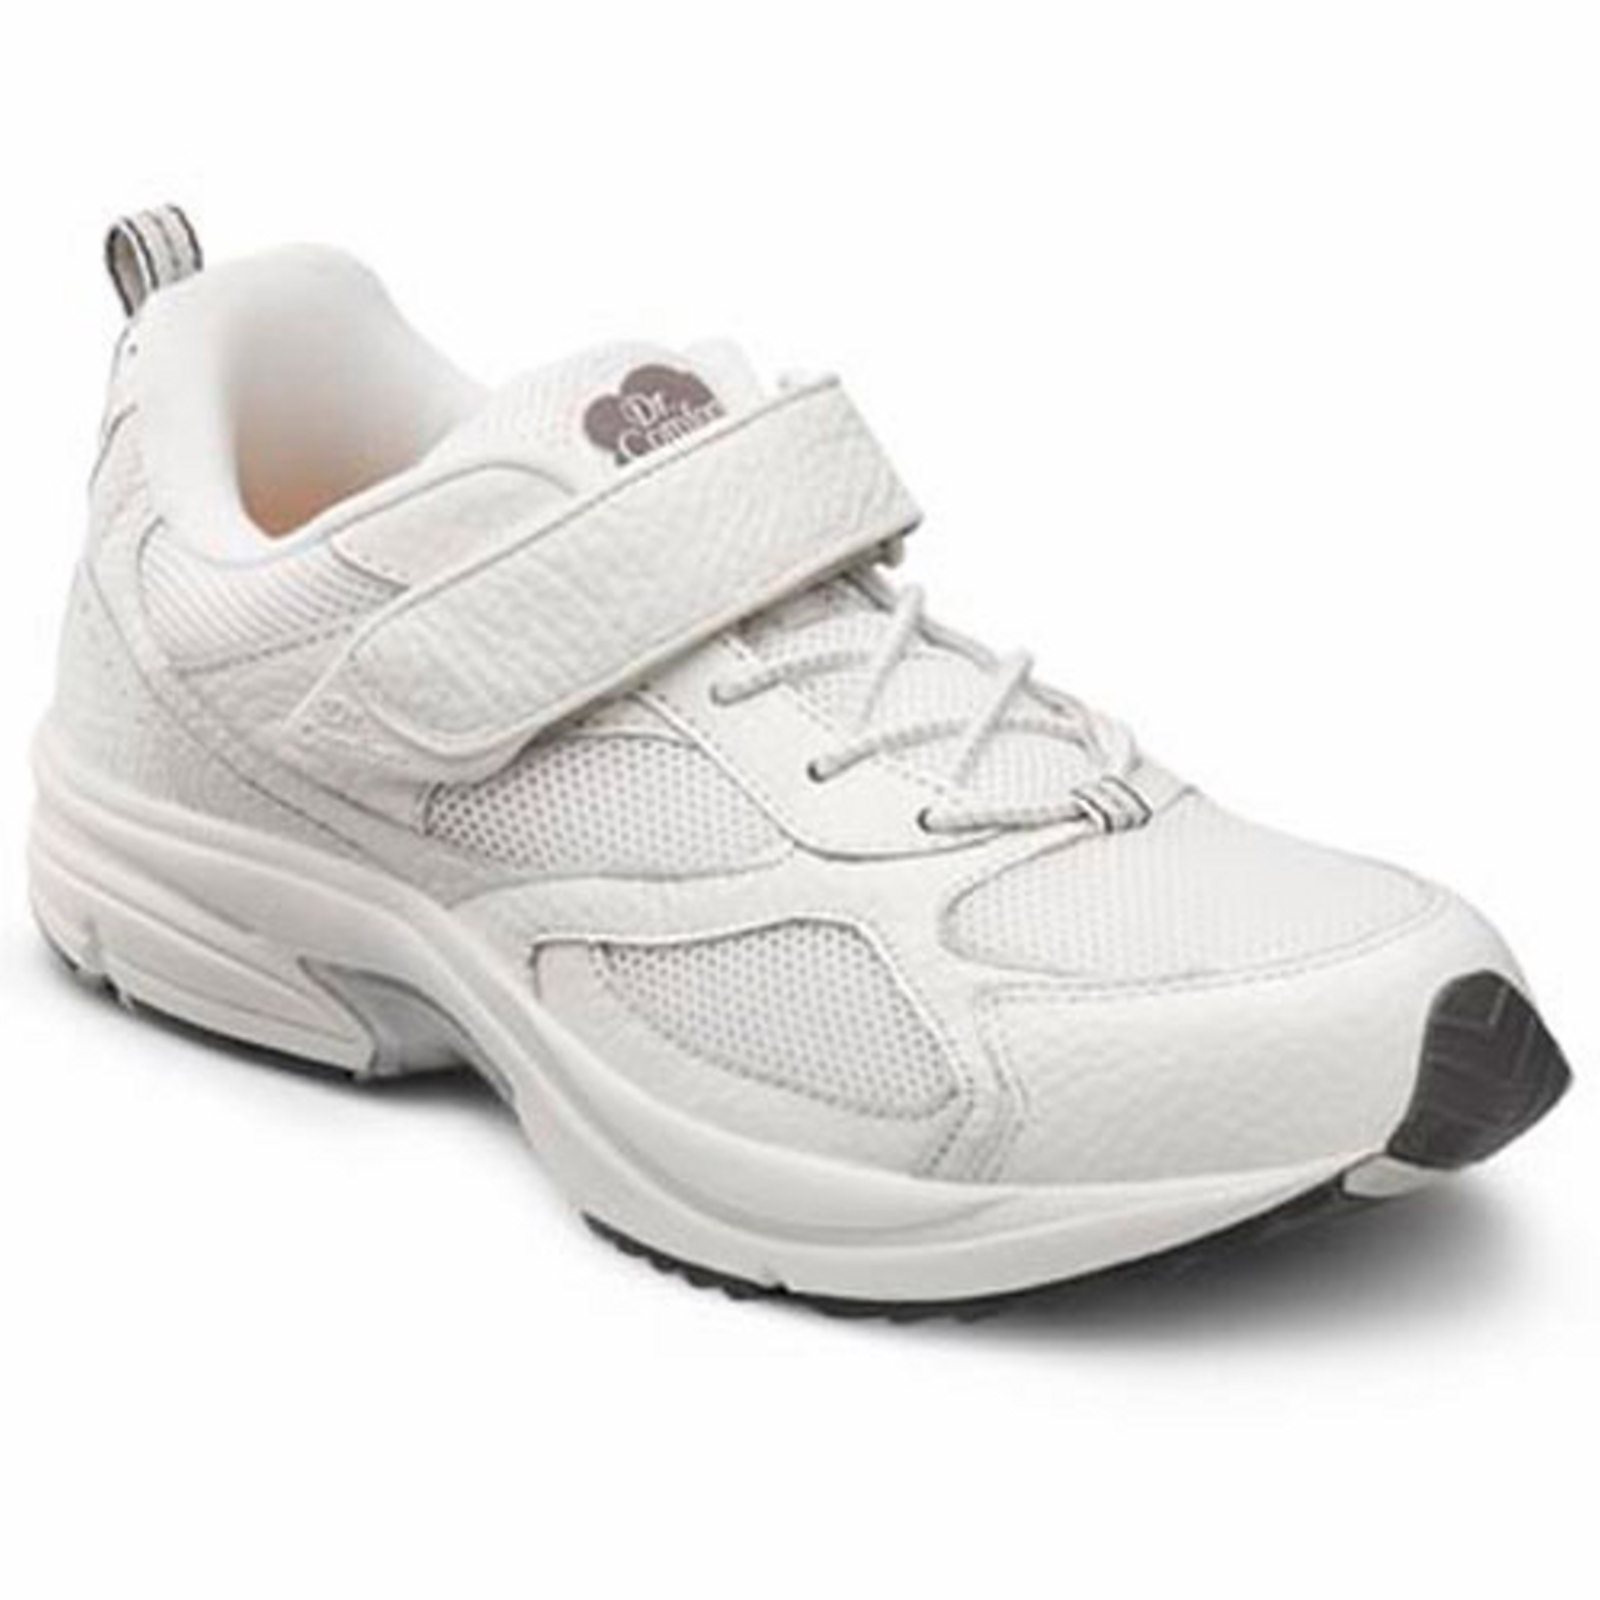 Dr. Comfort Endurance Men's Athletic Shoe: 8 X-Wide (3E/4E) White Elastic Lace w/Strap - image 1 of 4